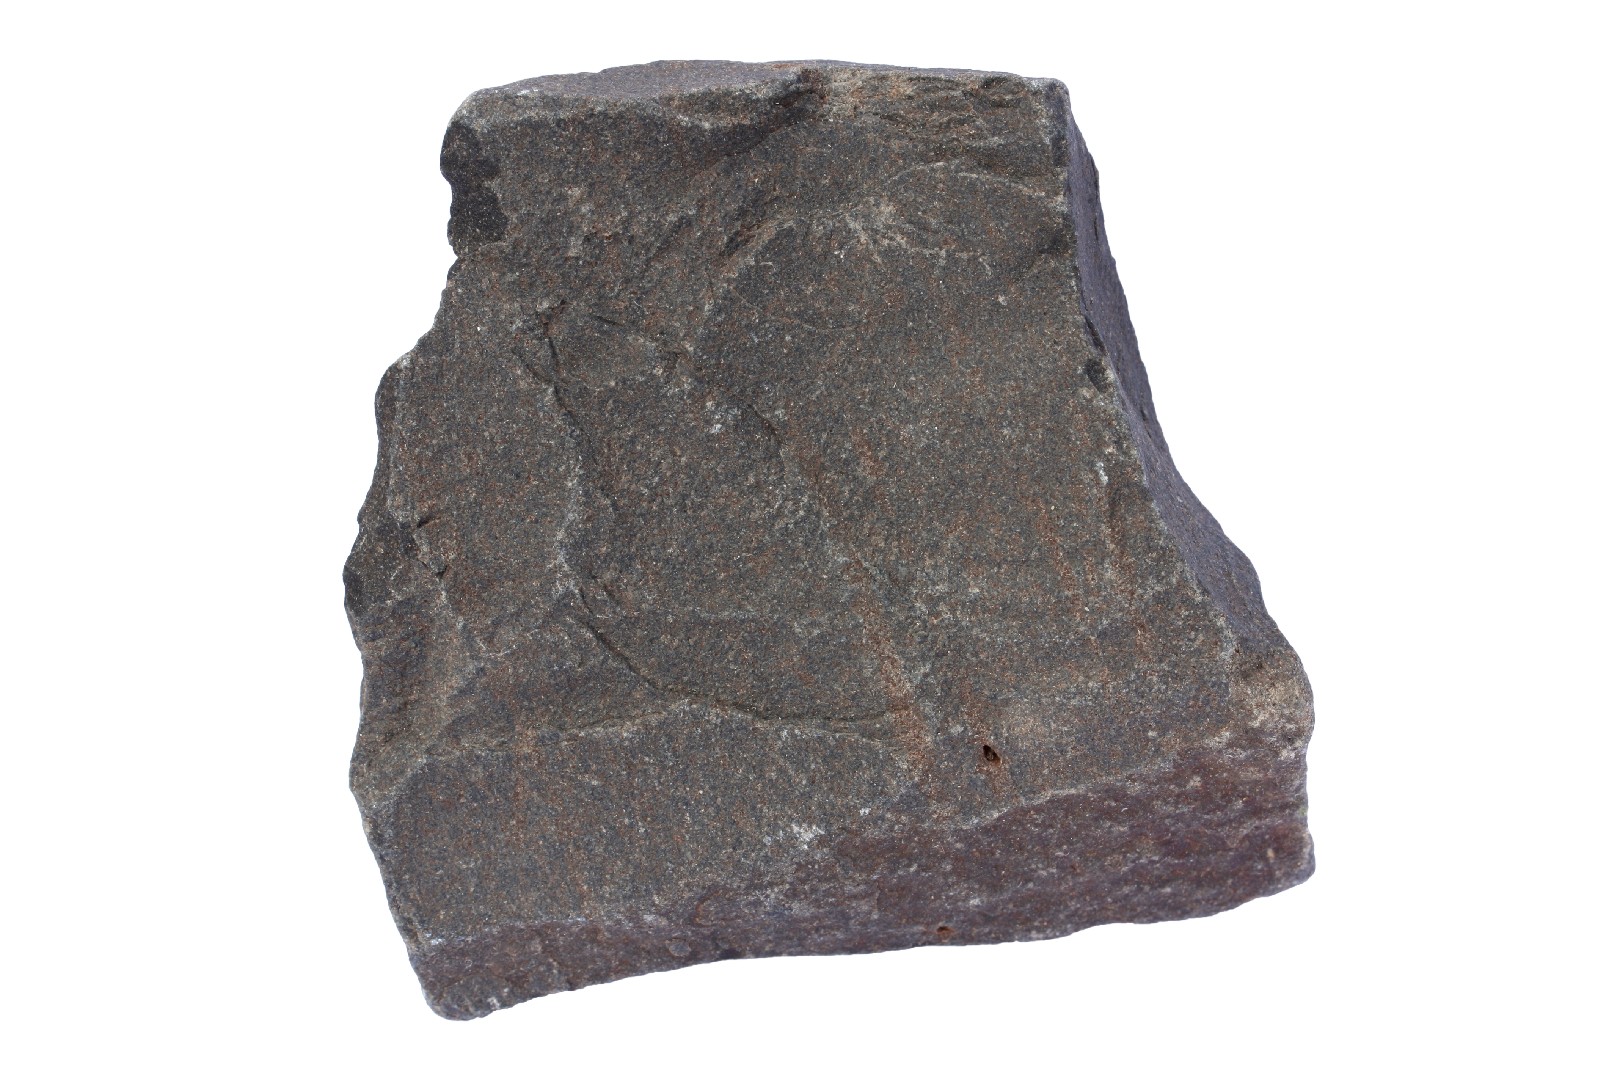 ゲンブガン（玄武岩） (Basalt)